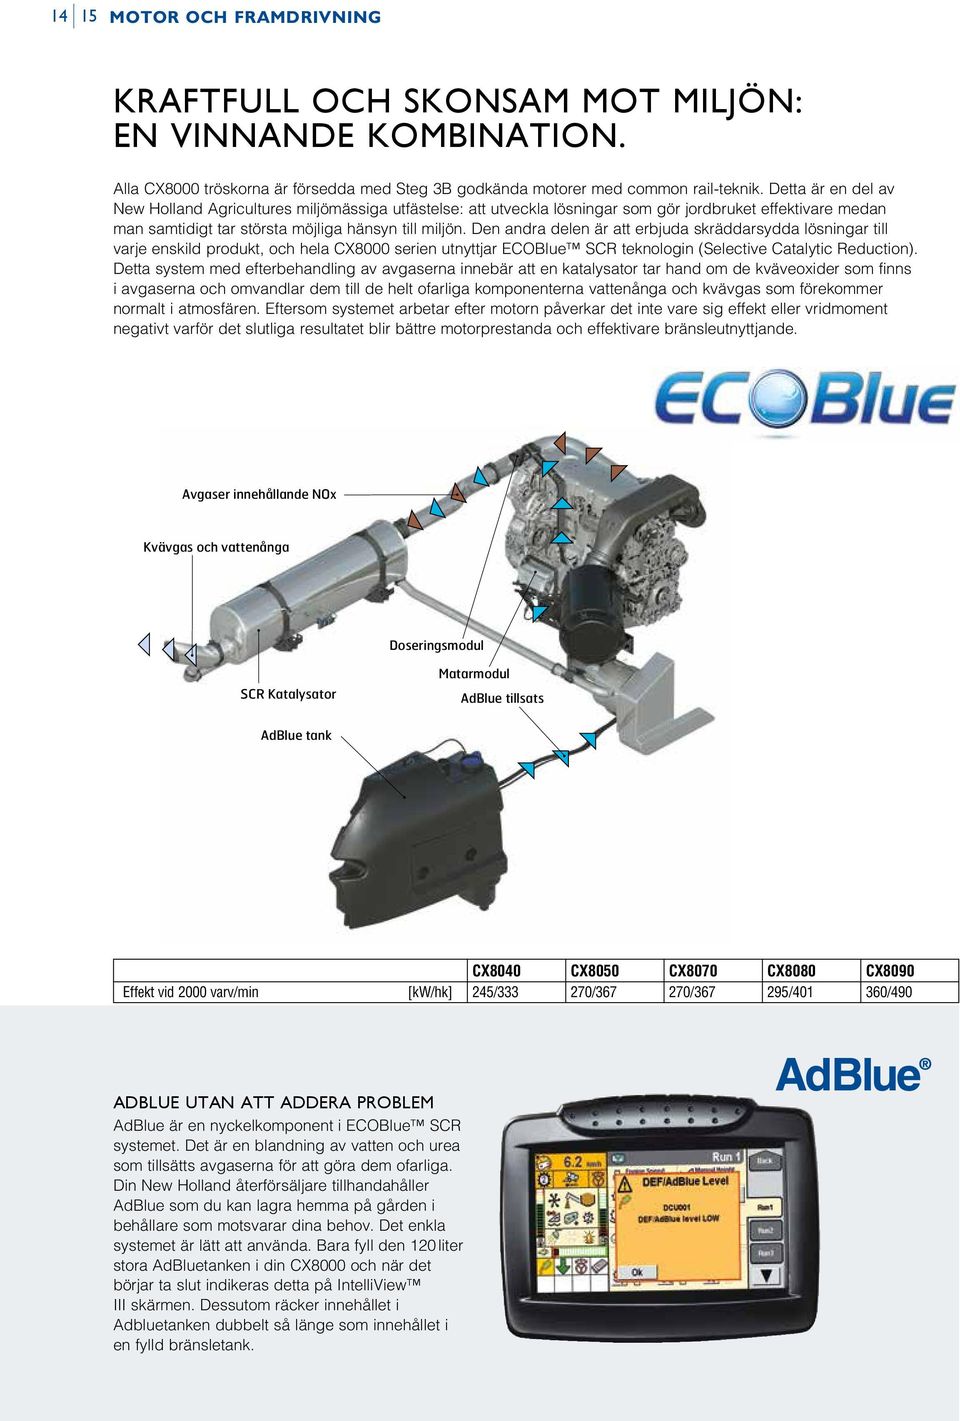 Den andra delen är att erbjuda skräddarsydda lösningar till varje enskild produkt, och hela CX8000 serien utnyttjar ECOBlue SCR teknologin (Selective Catalytic Reduction).